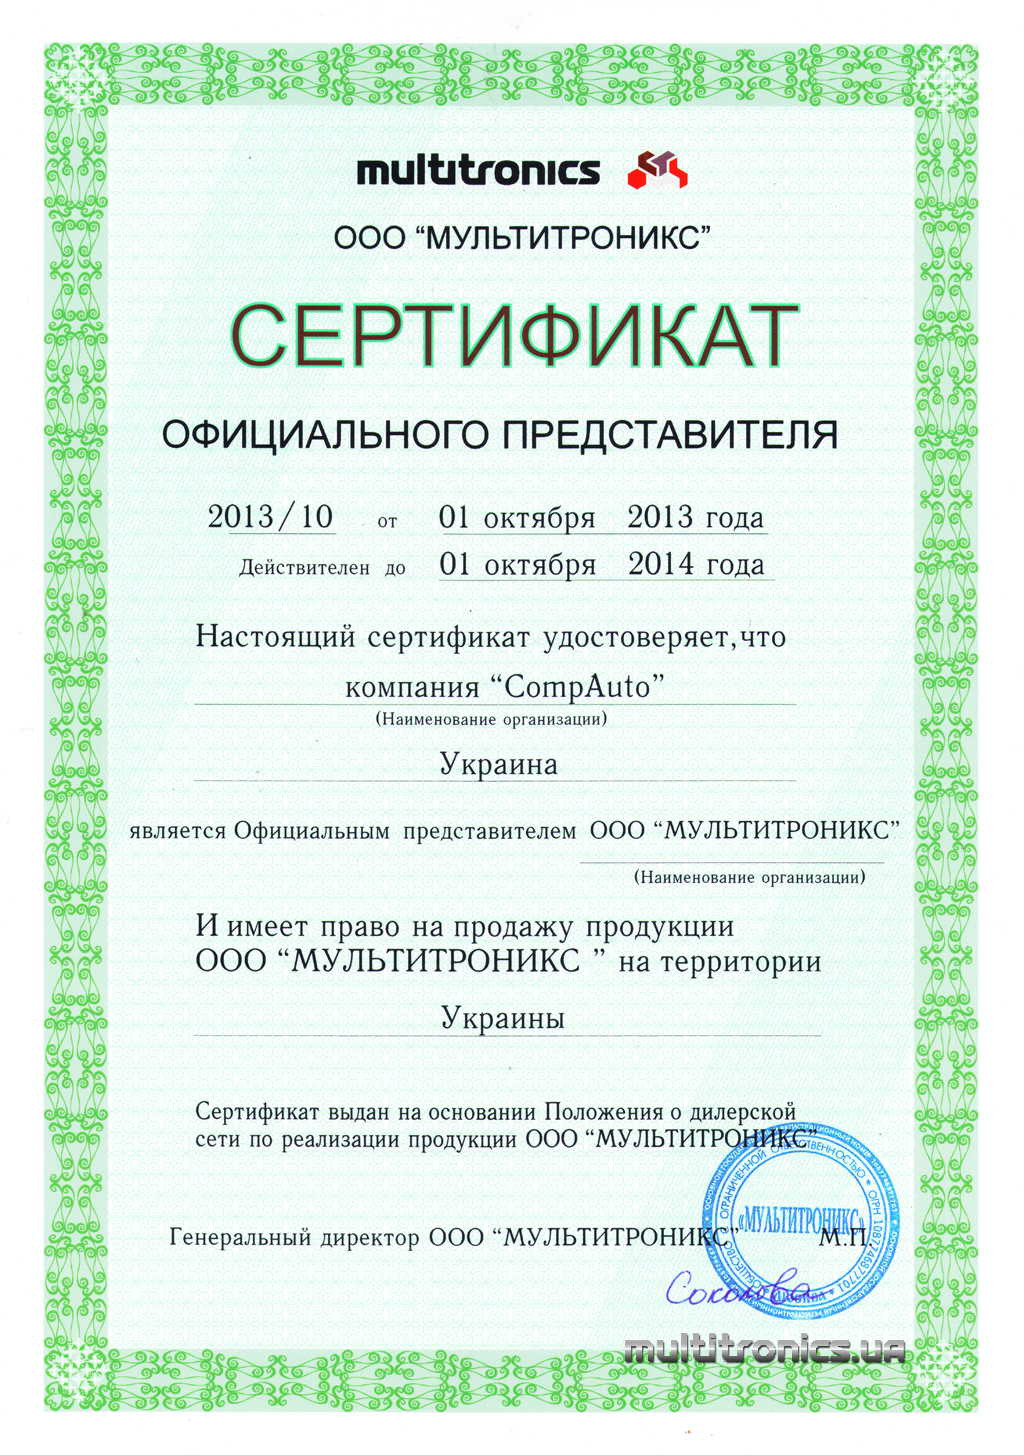 Сертификат - Multitronics